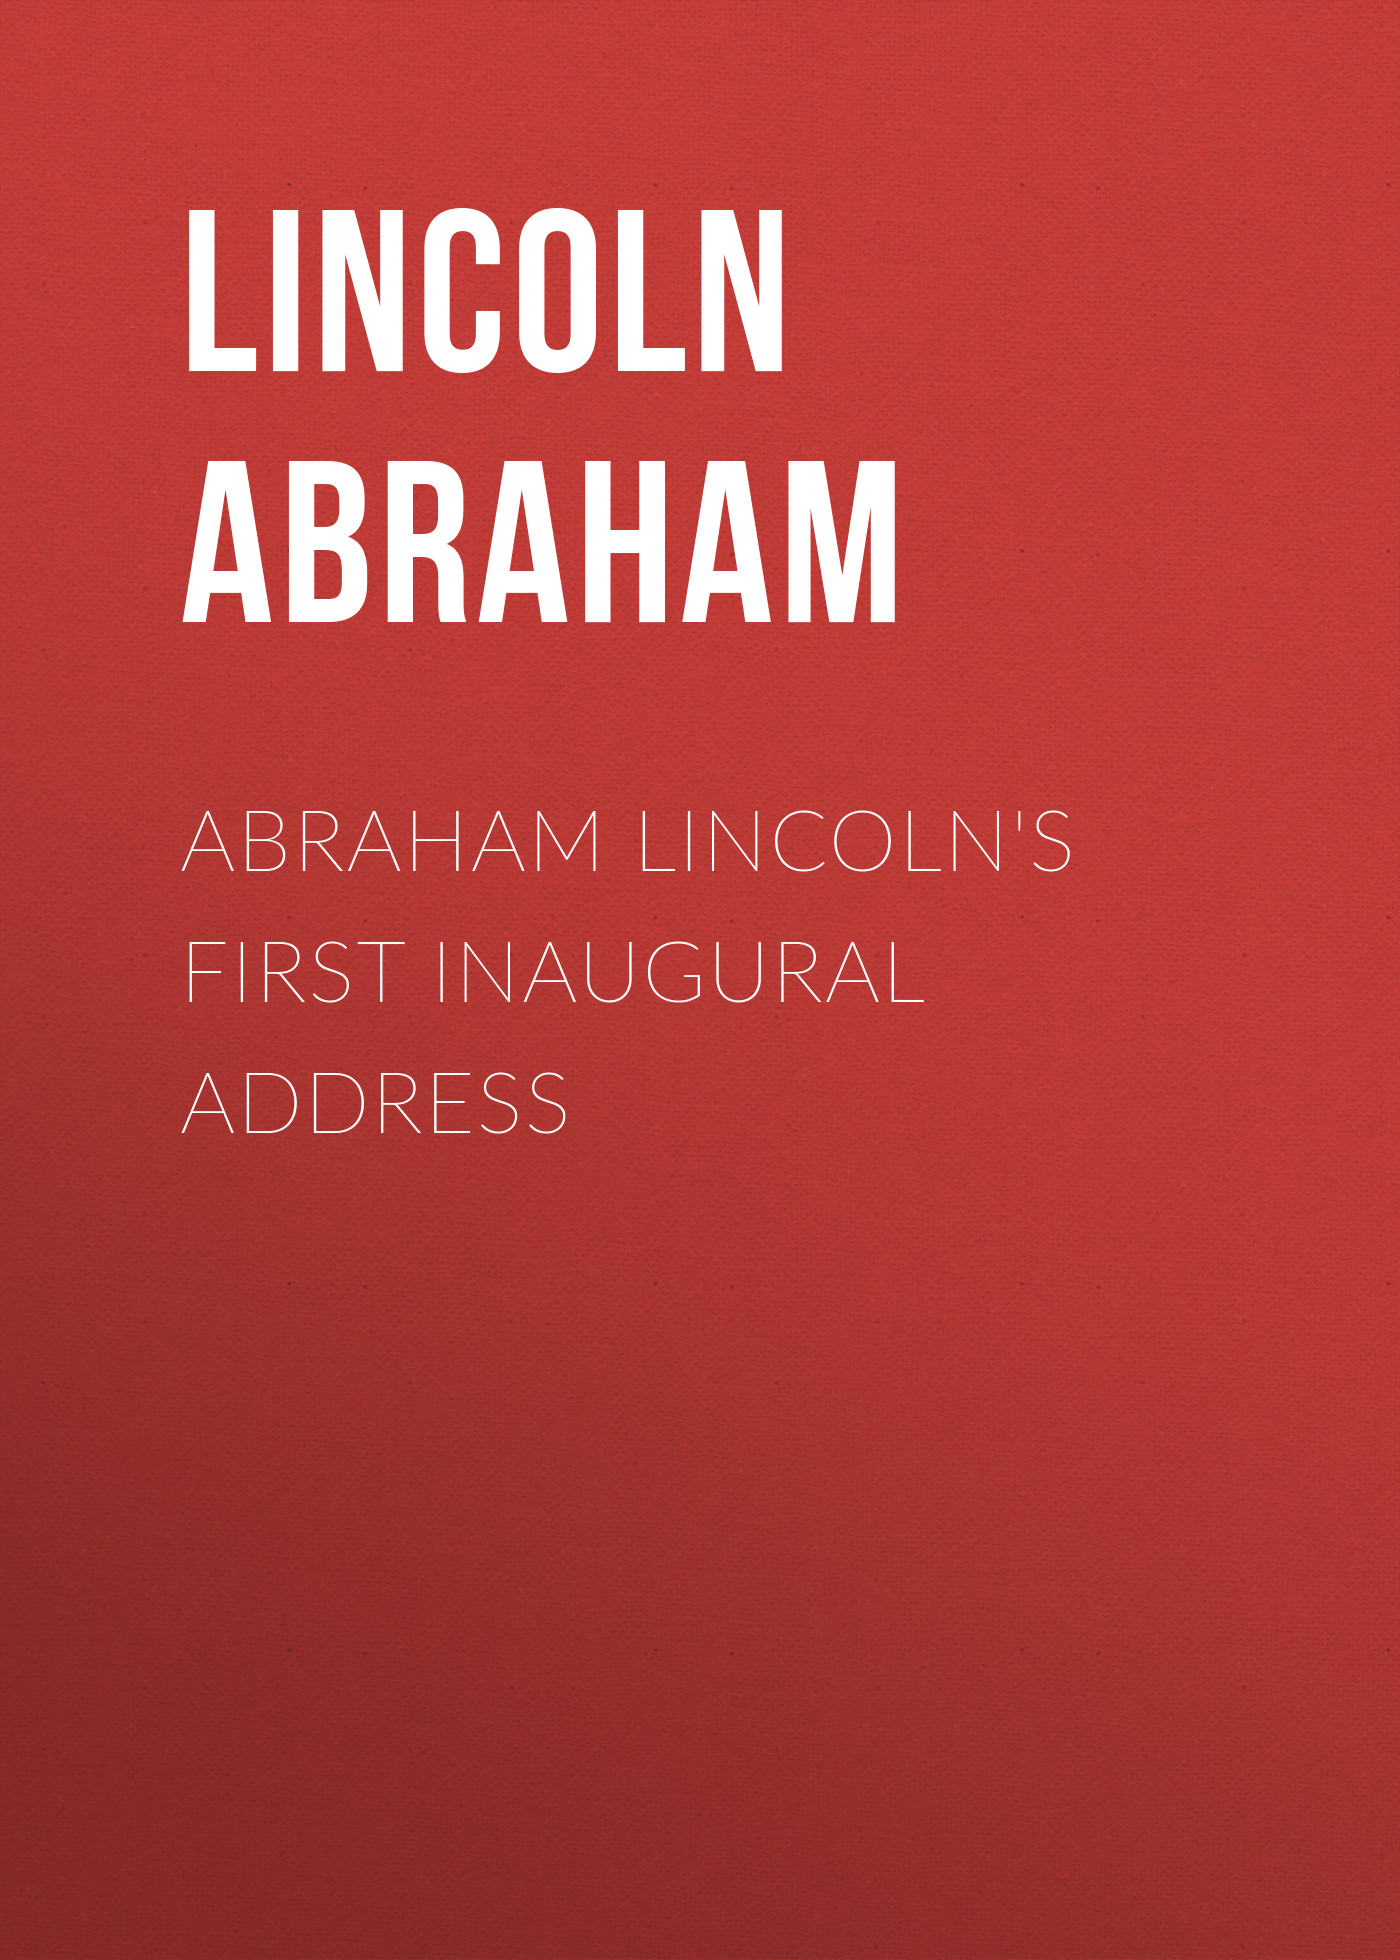 Книга Abraham Lincoln's First Inaugural Address из серии , созданная Abraham Lincoln, может относится к жанру Зарубежная старинная литература, Зарубежная классика. Стоимость электронной книги Abraham Lincoln's First Inaugural Address с идентификатором 25291755 составляет 0 руб.